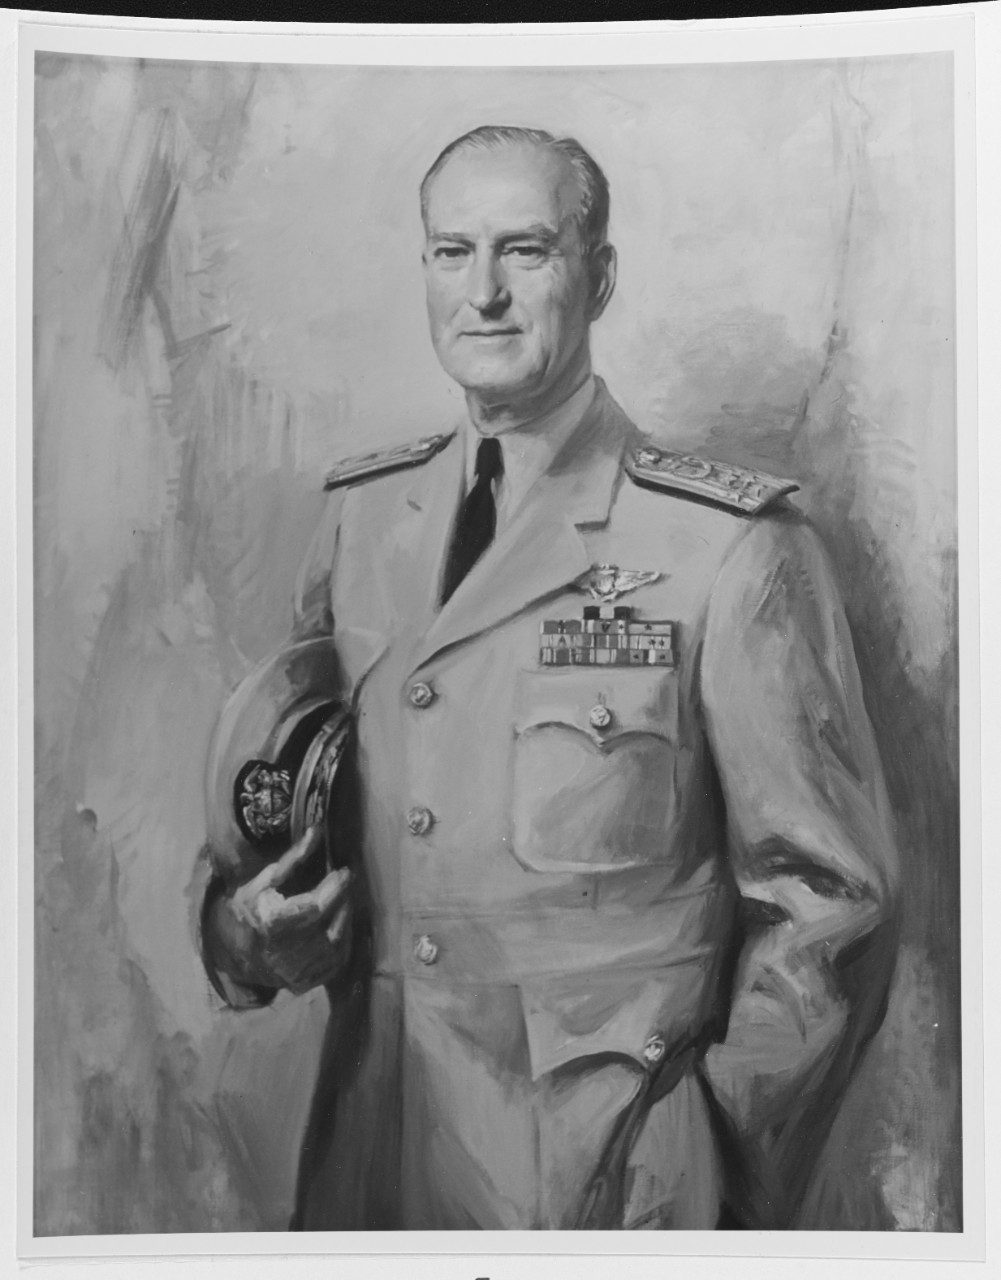 Admiral David L. McDonald